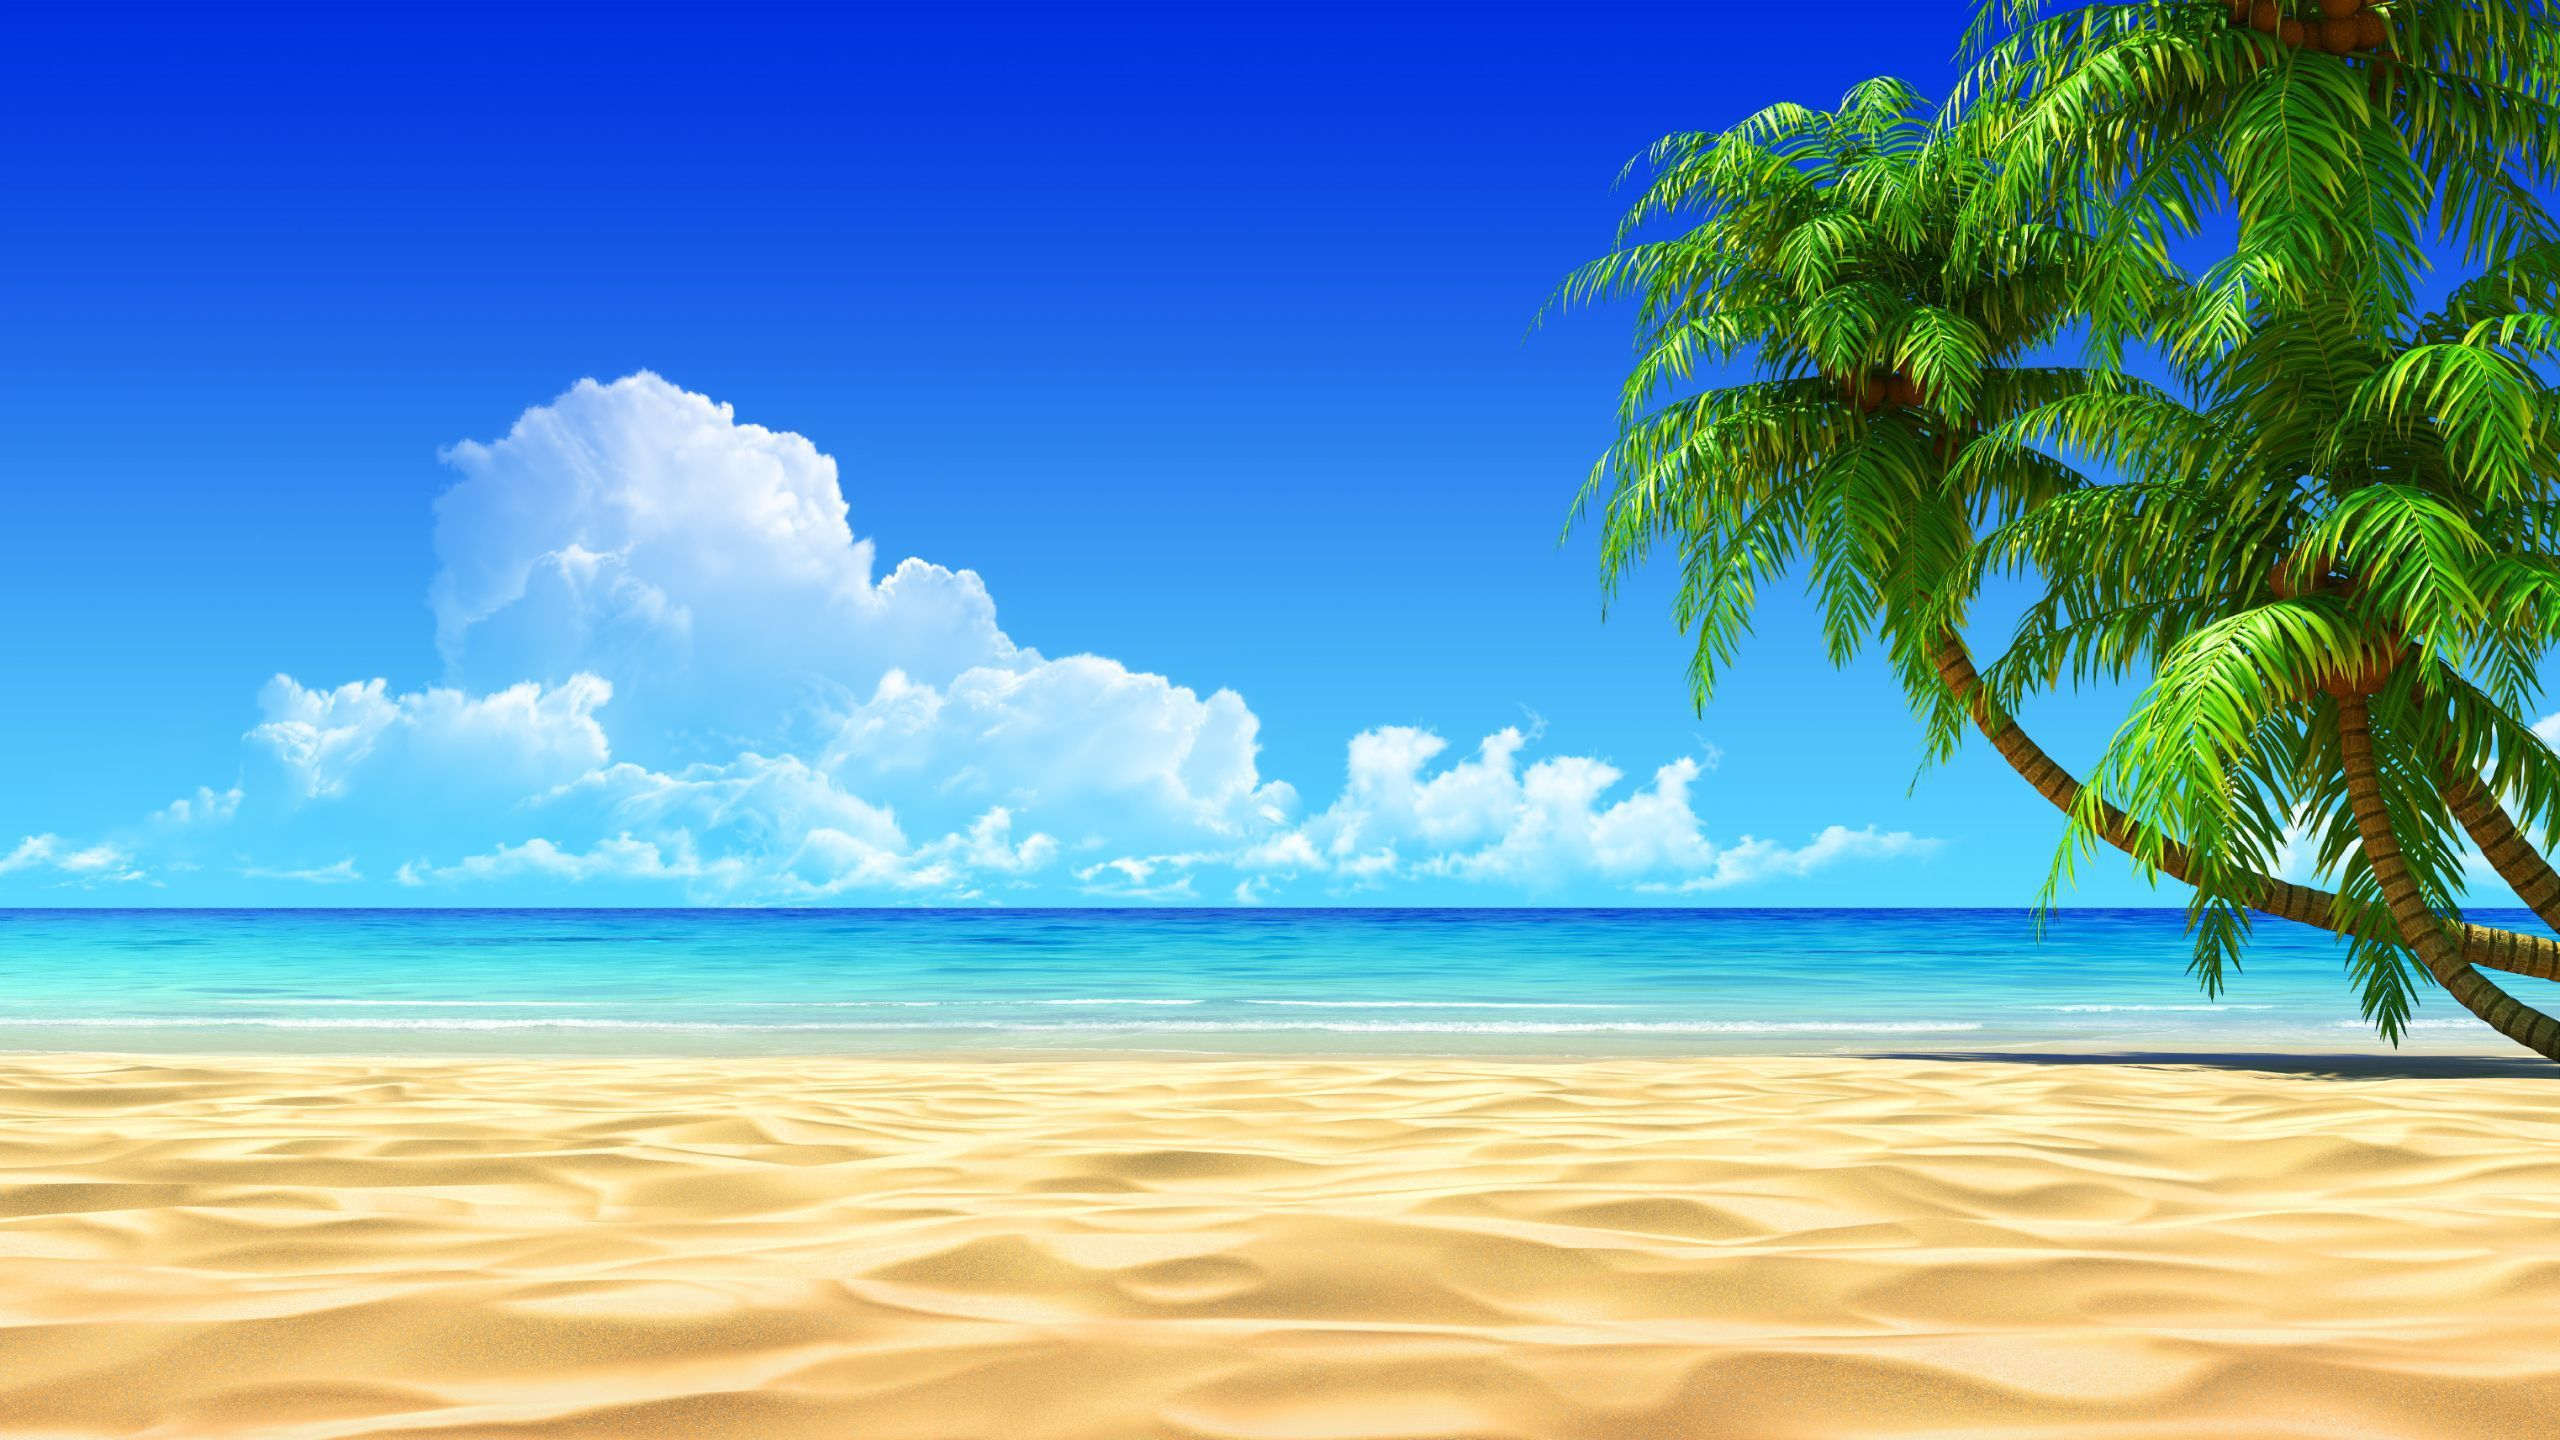 2560x1440 Beach Scenes Desktop Wallpapers